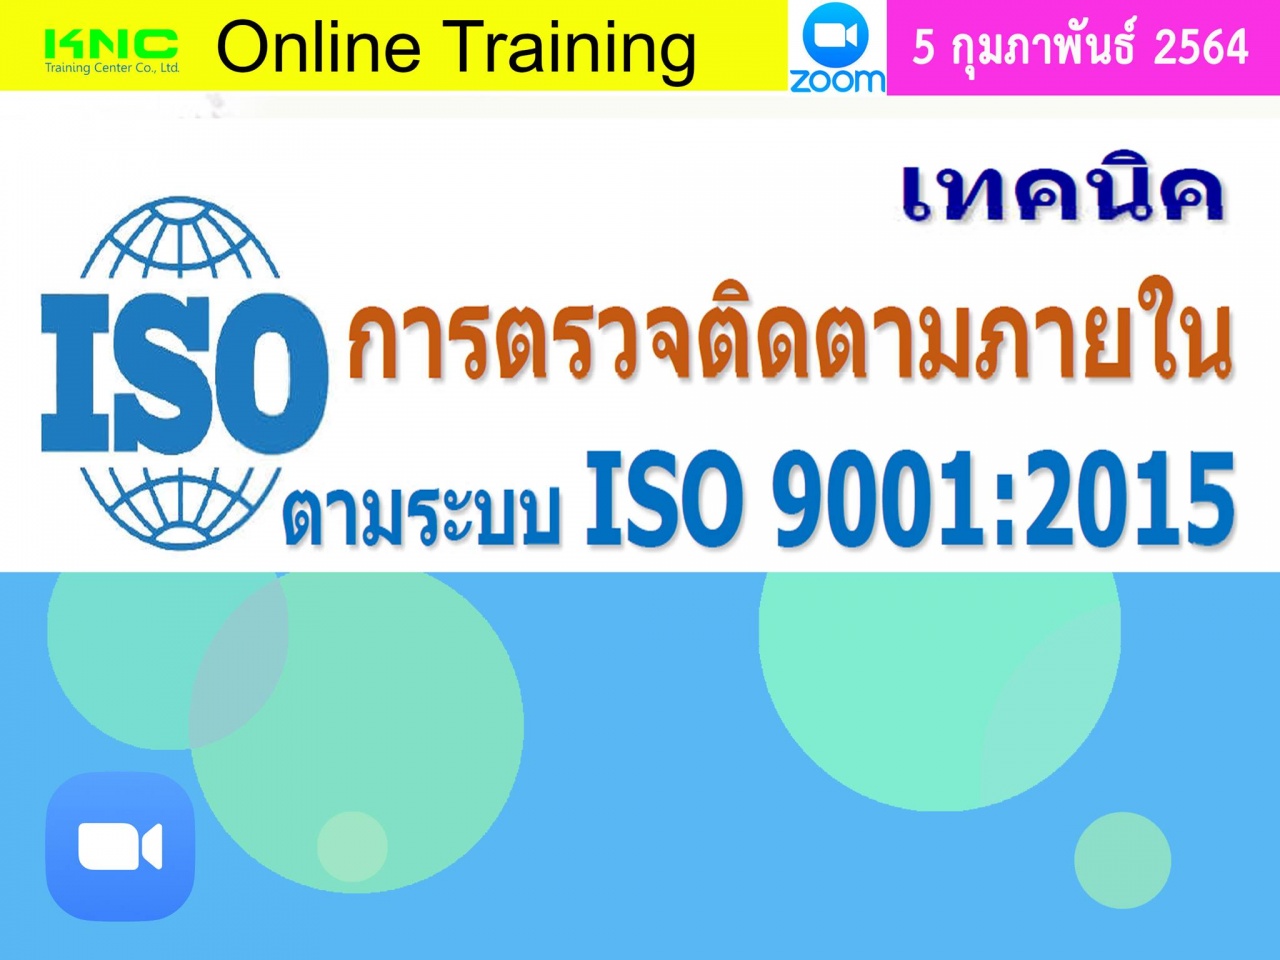 สัมมนา Online : เทคนิคการตรวจติดตามภายใน ตามระบบ ISO 9001:2015